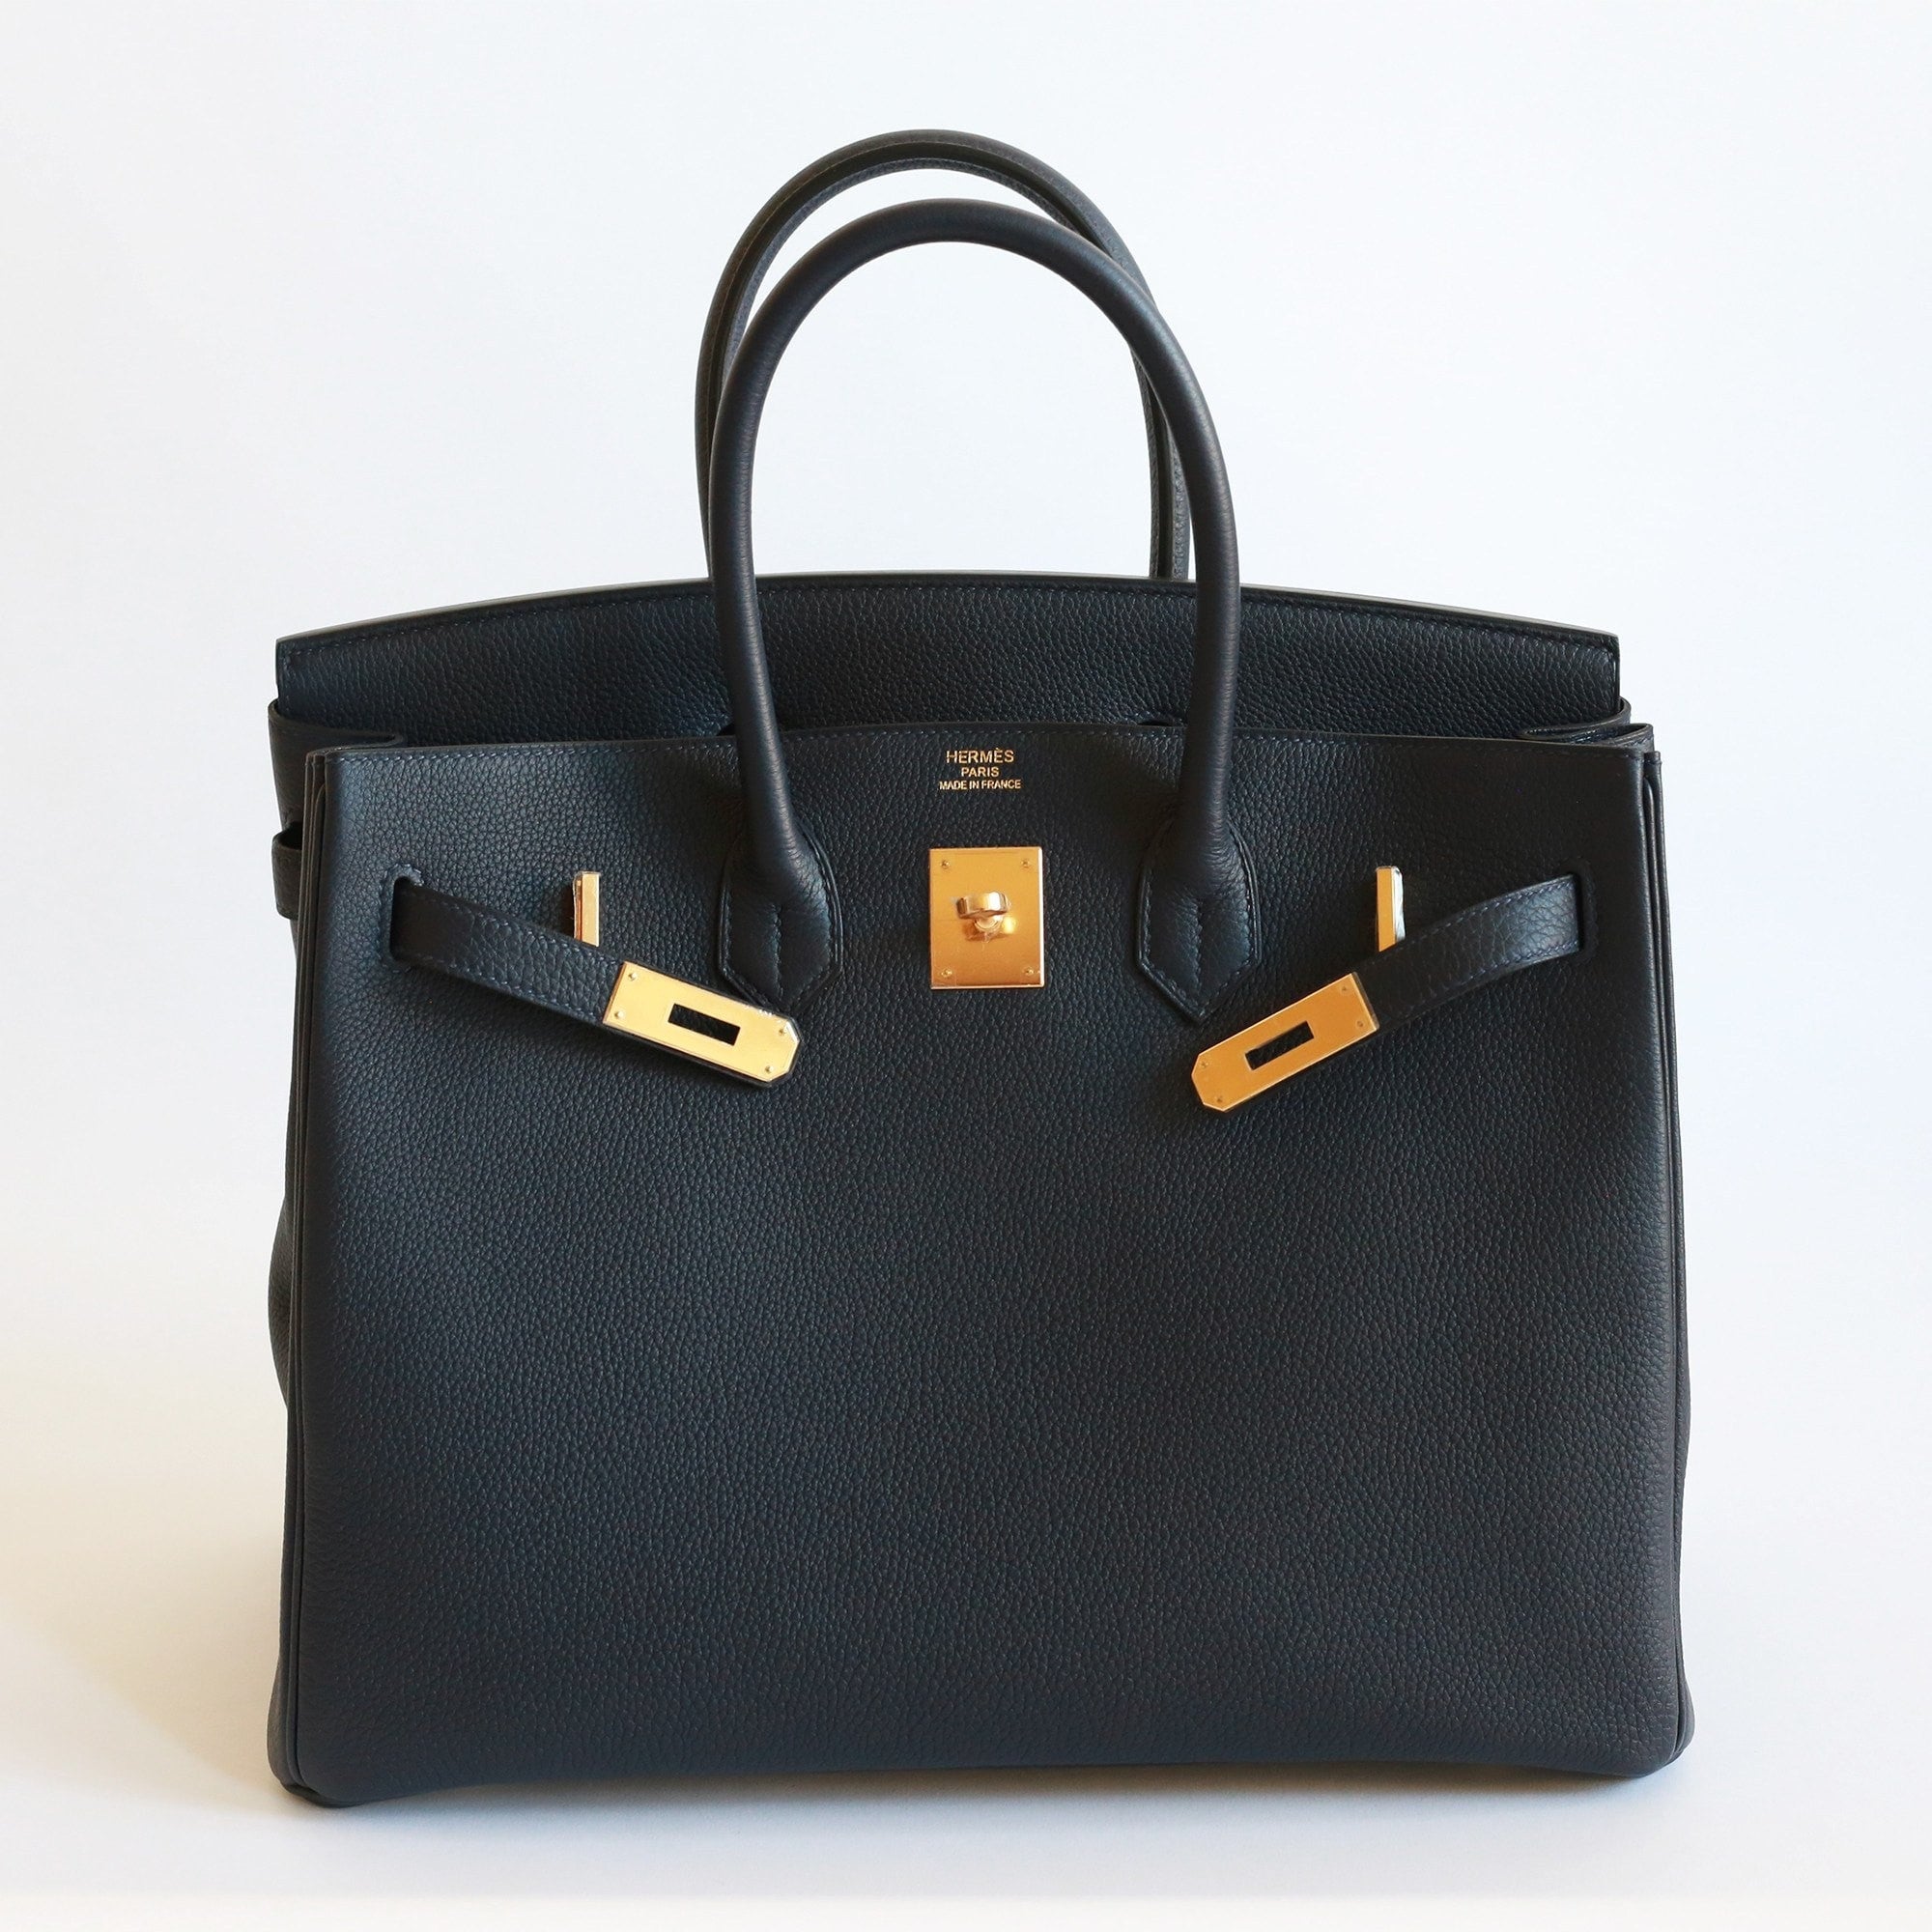 Hermès Birkin Bag 30cm in Bleu Nuit Togo Leather with Gold